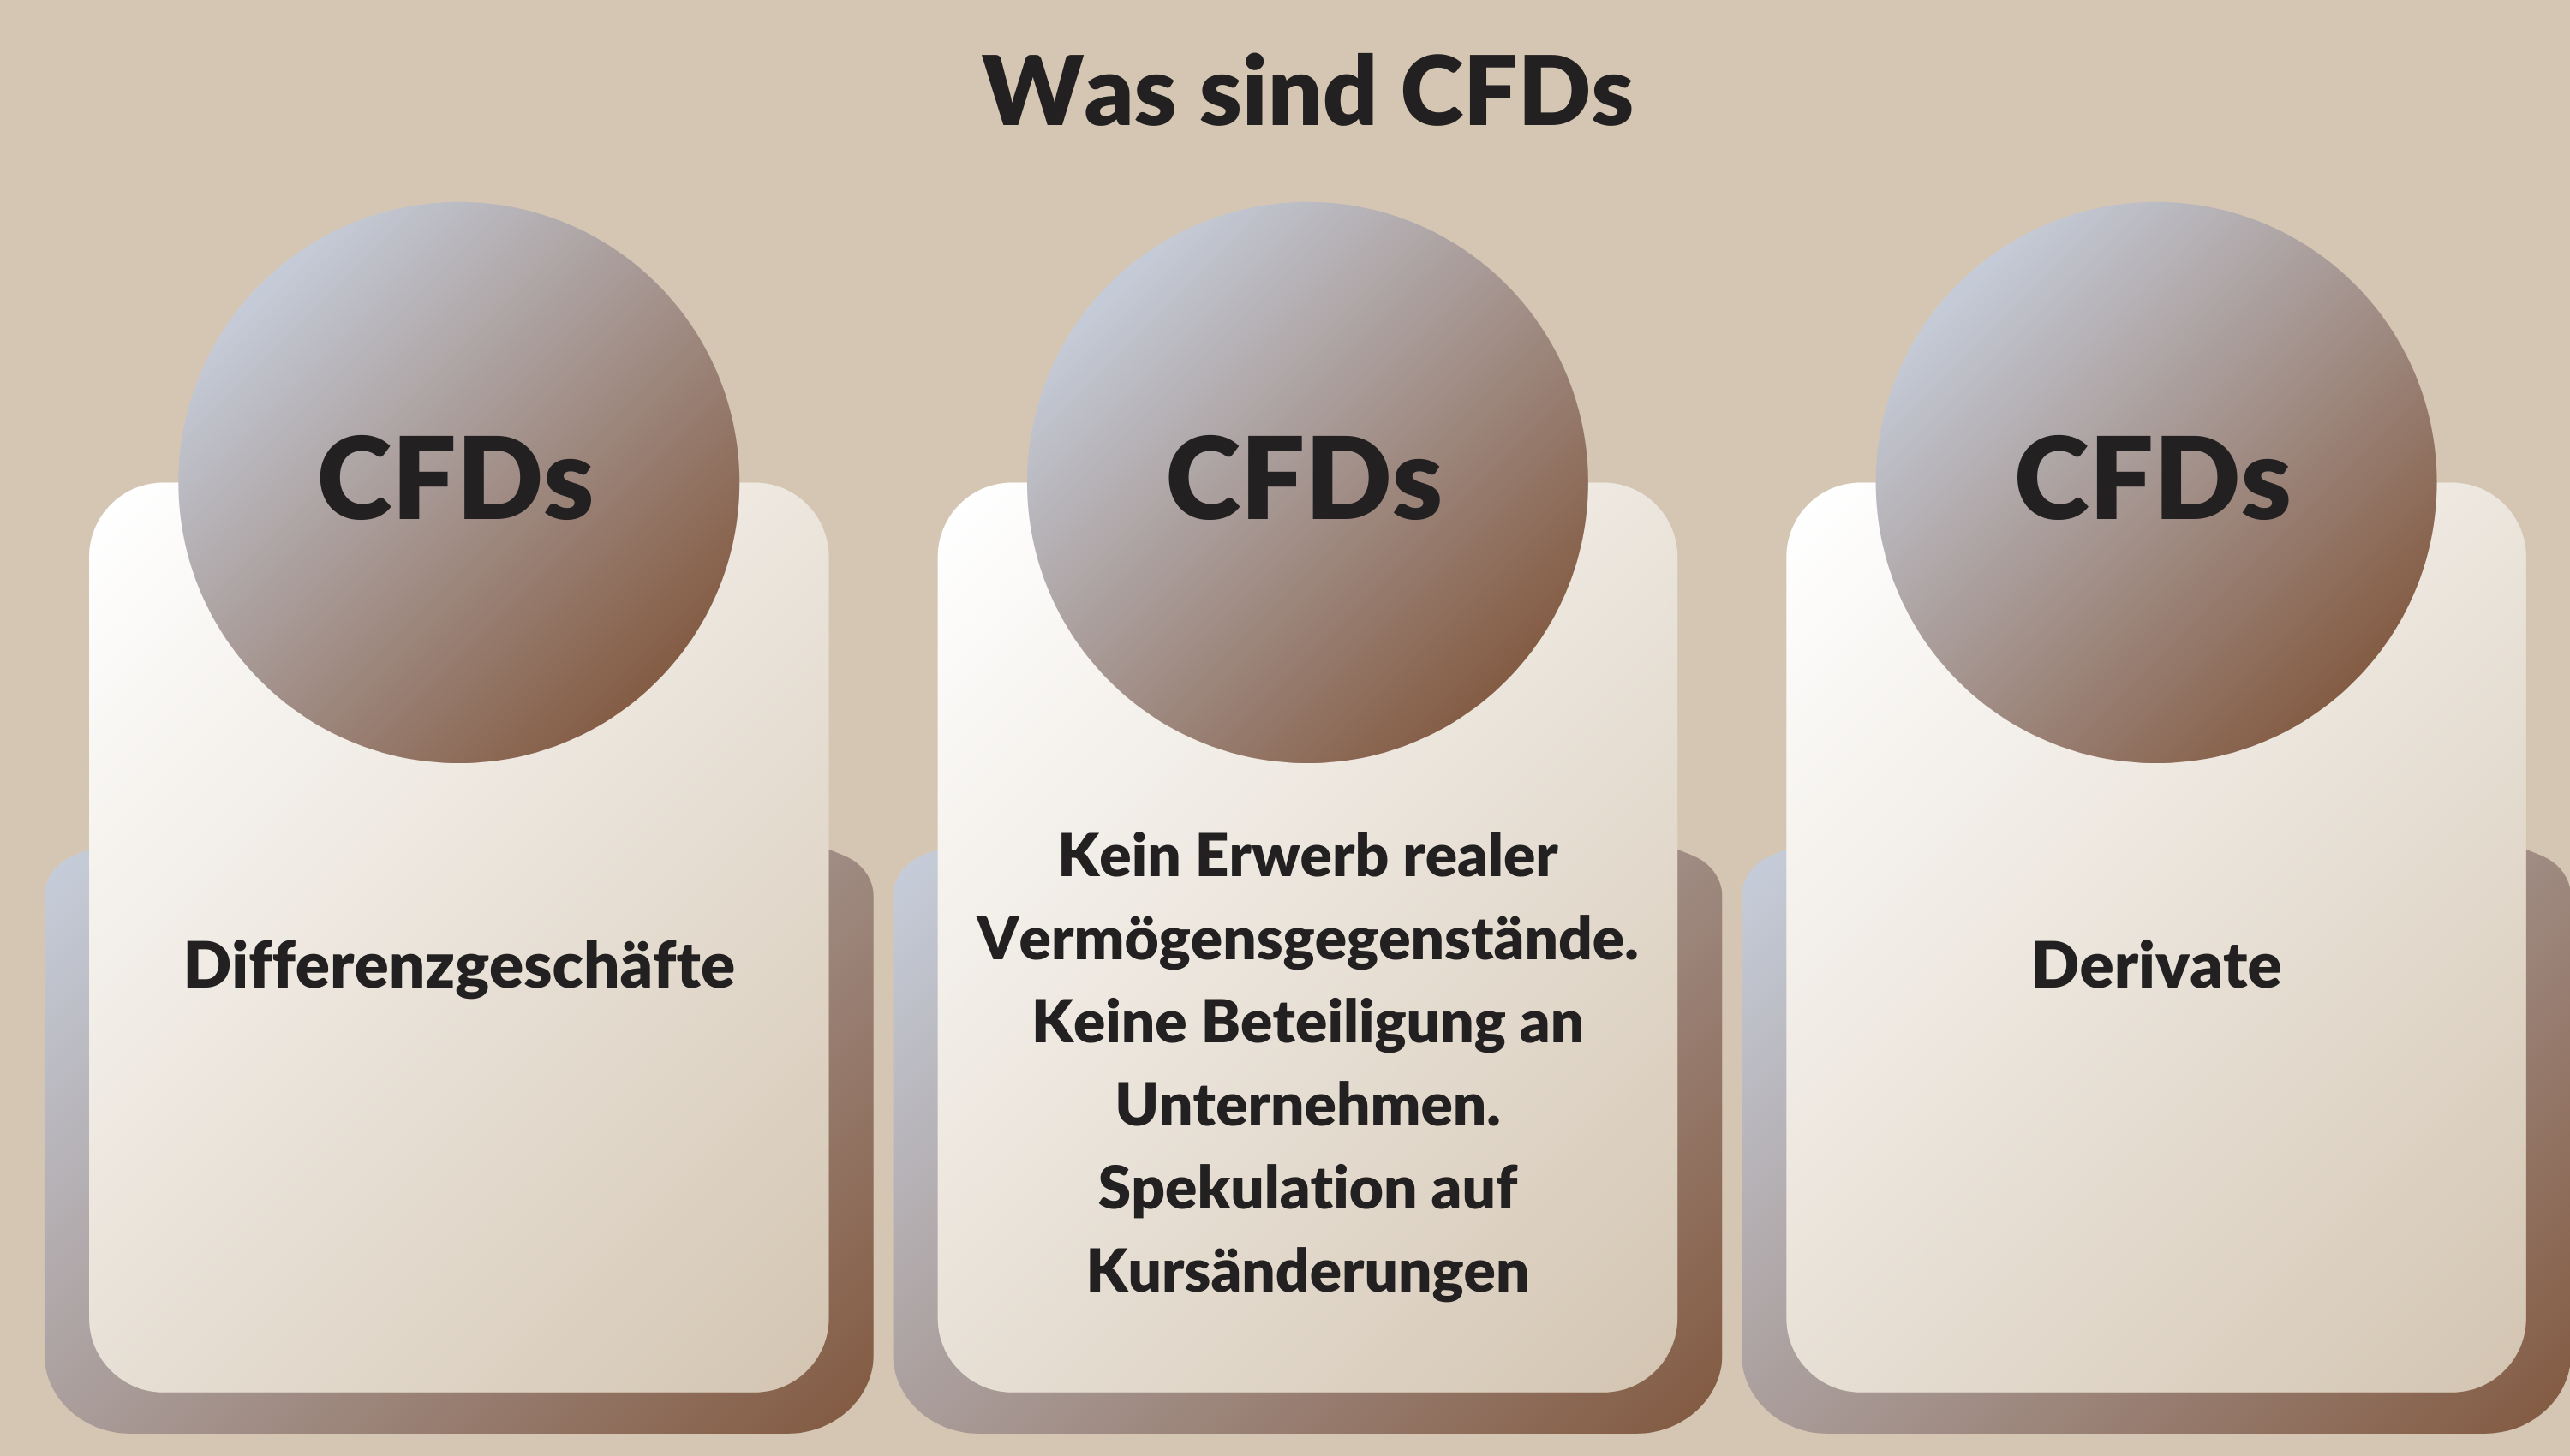 Was sind CFDs - Bedeutung des Begriffes